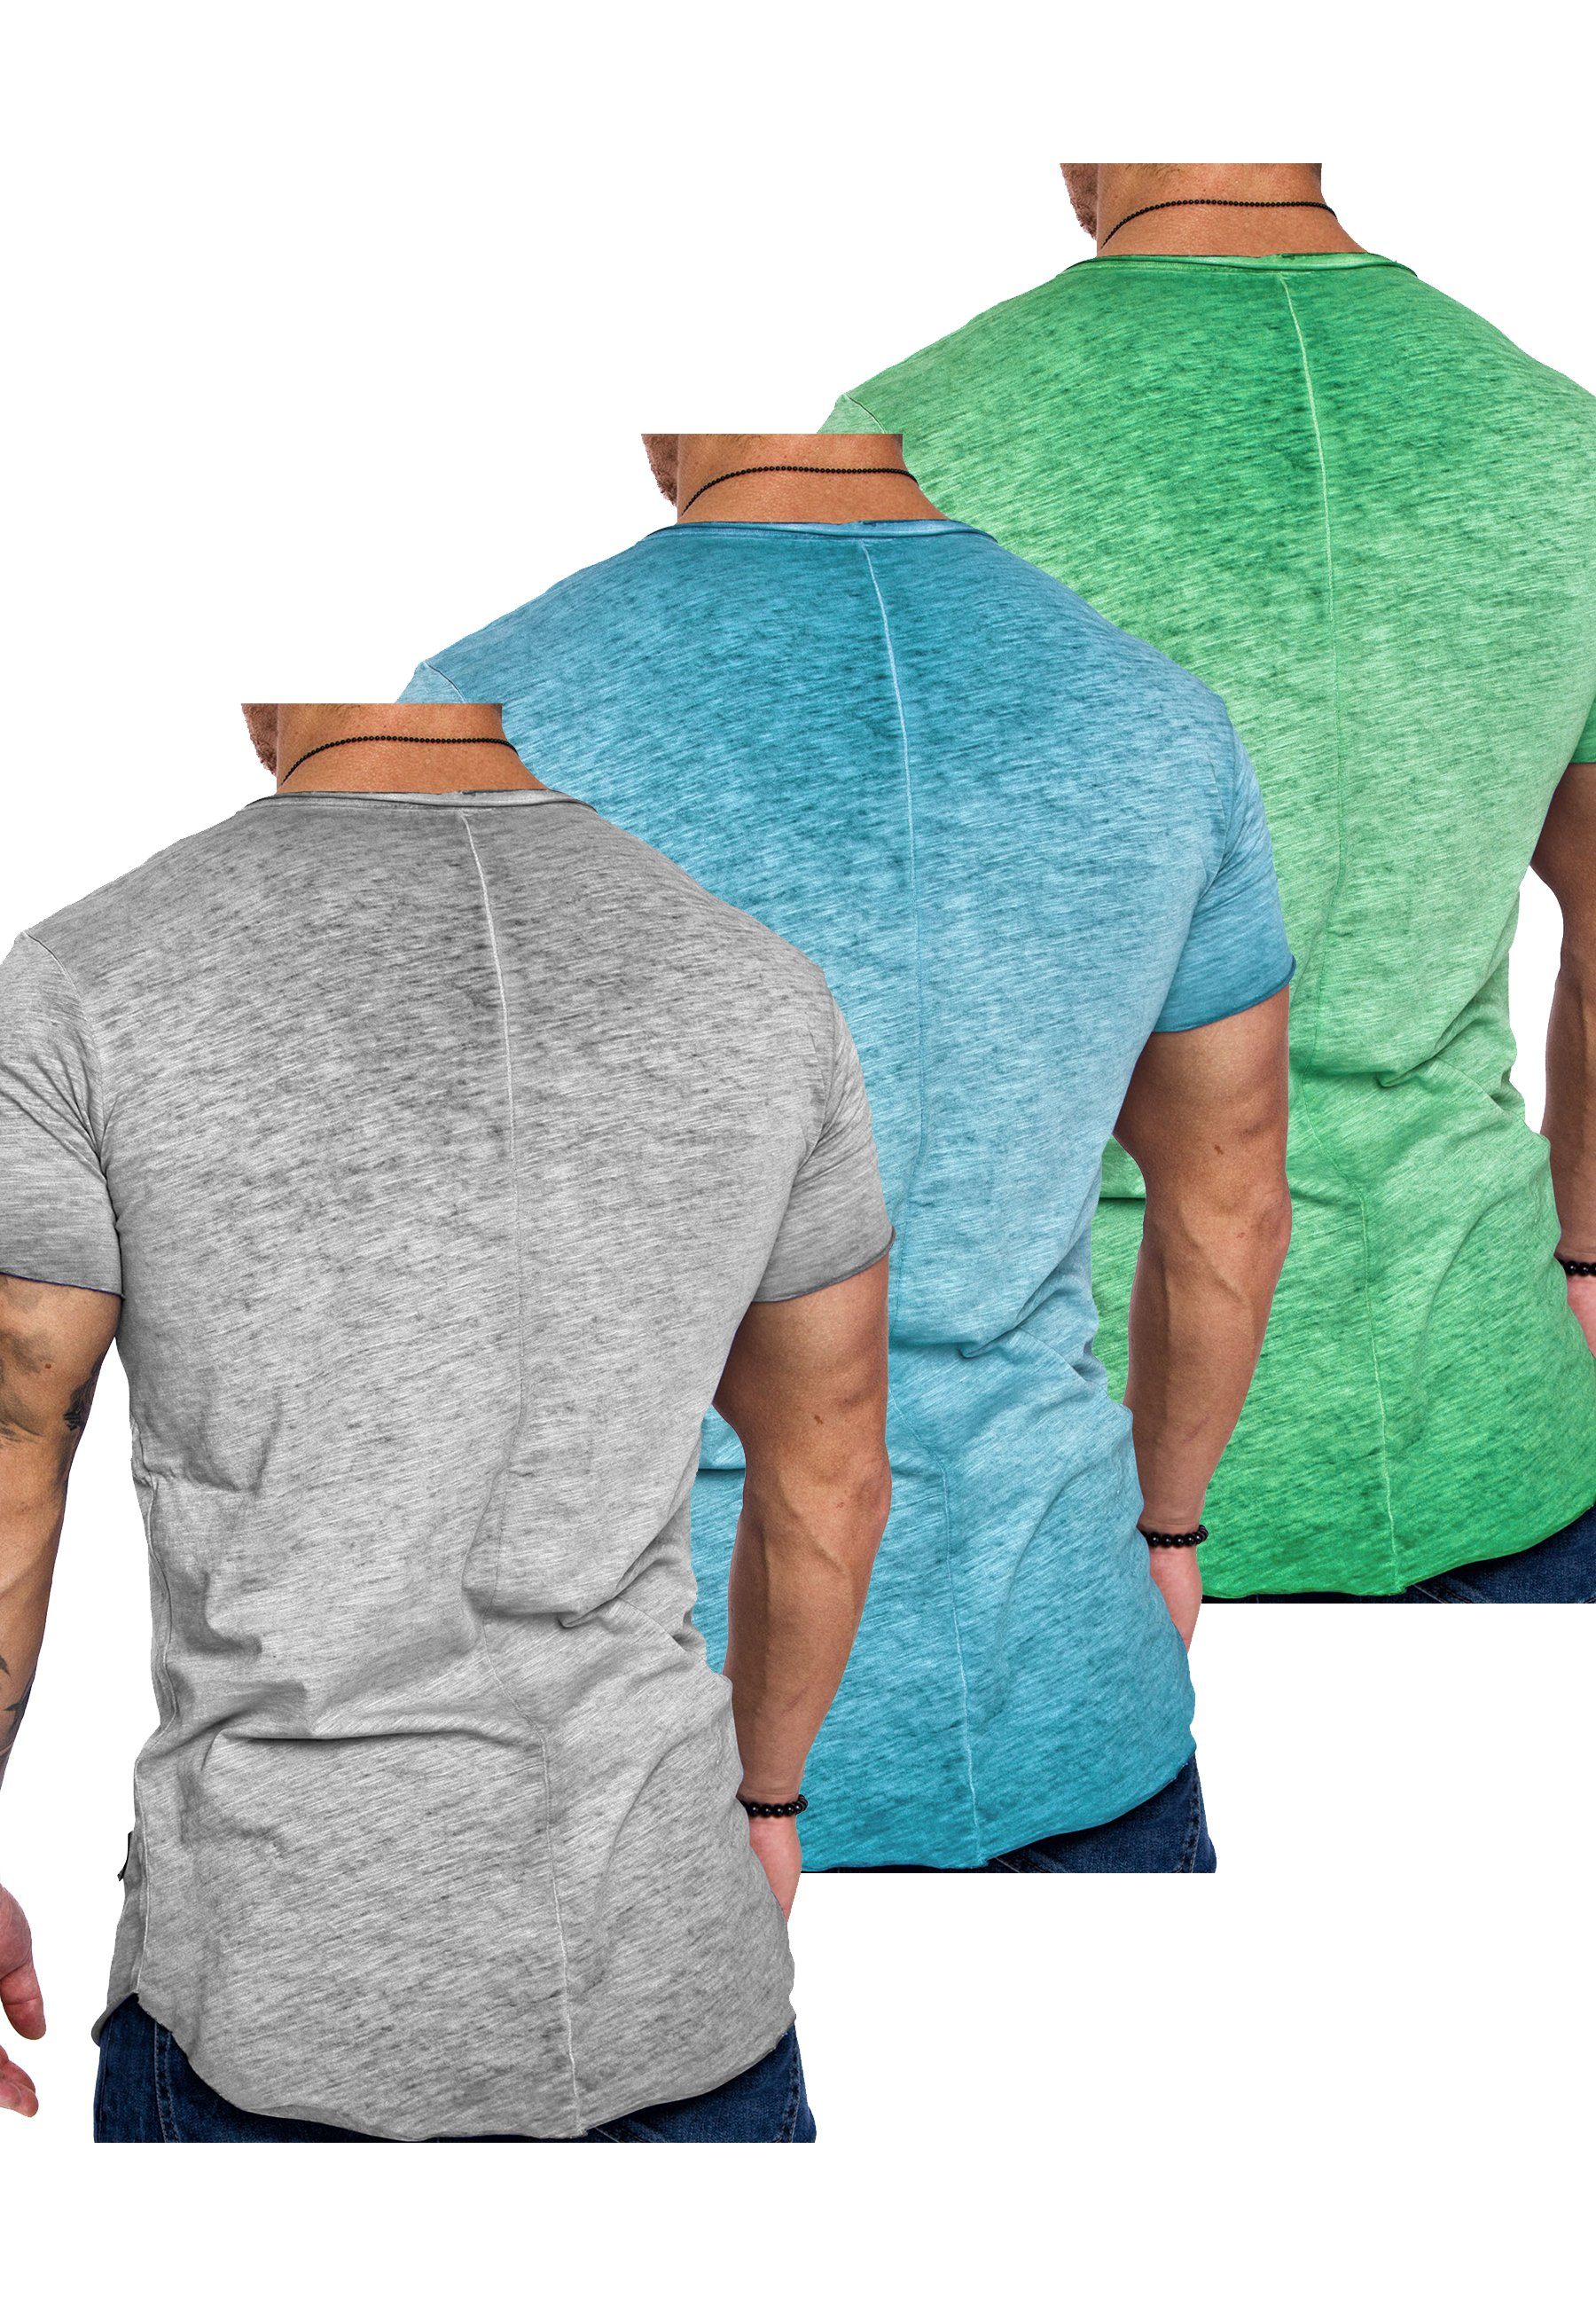 Amaci&Sons T-Shirt 3. SAN FRANCISCO + mit T-Shirt Hellgrau Herren (Türkis Mintgrün) 3er-Pack + V-Ausschnitt Basic T-Shirts Oversize (3er-Pack)